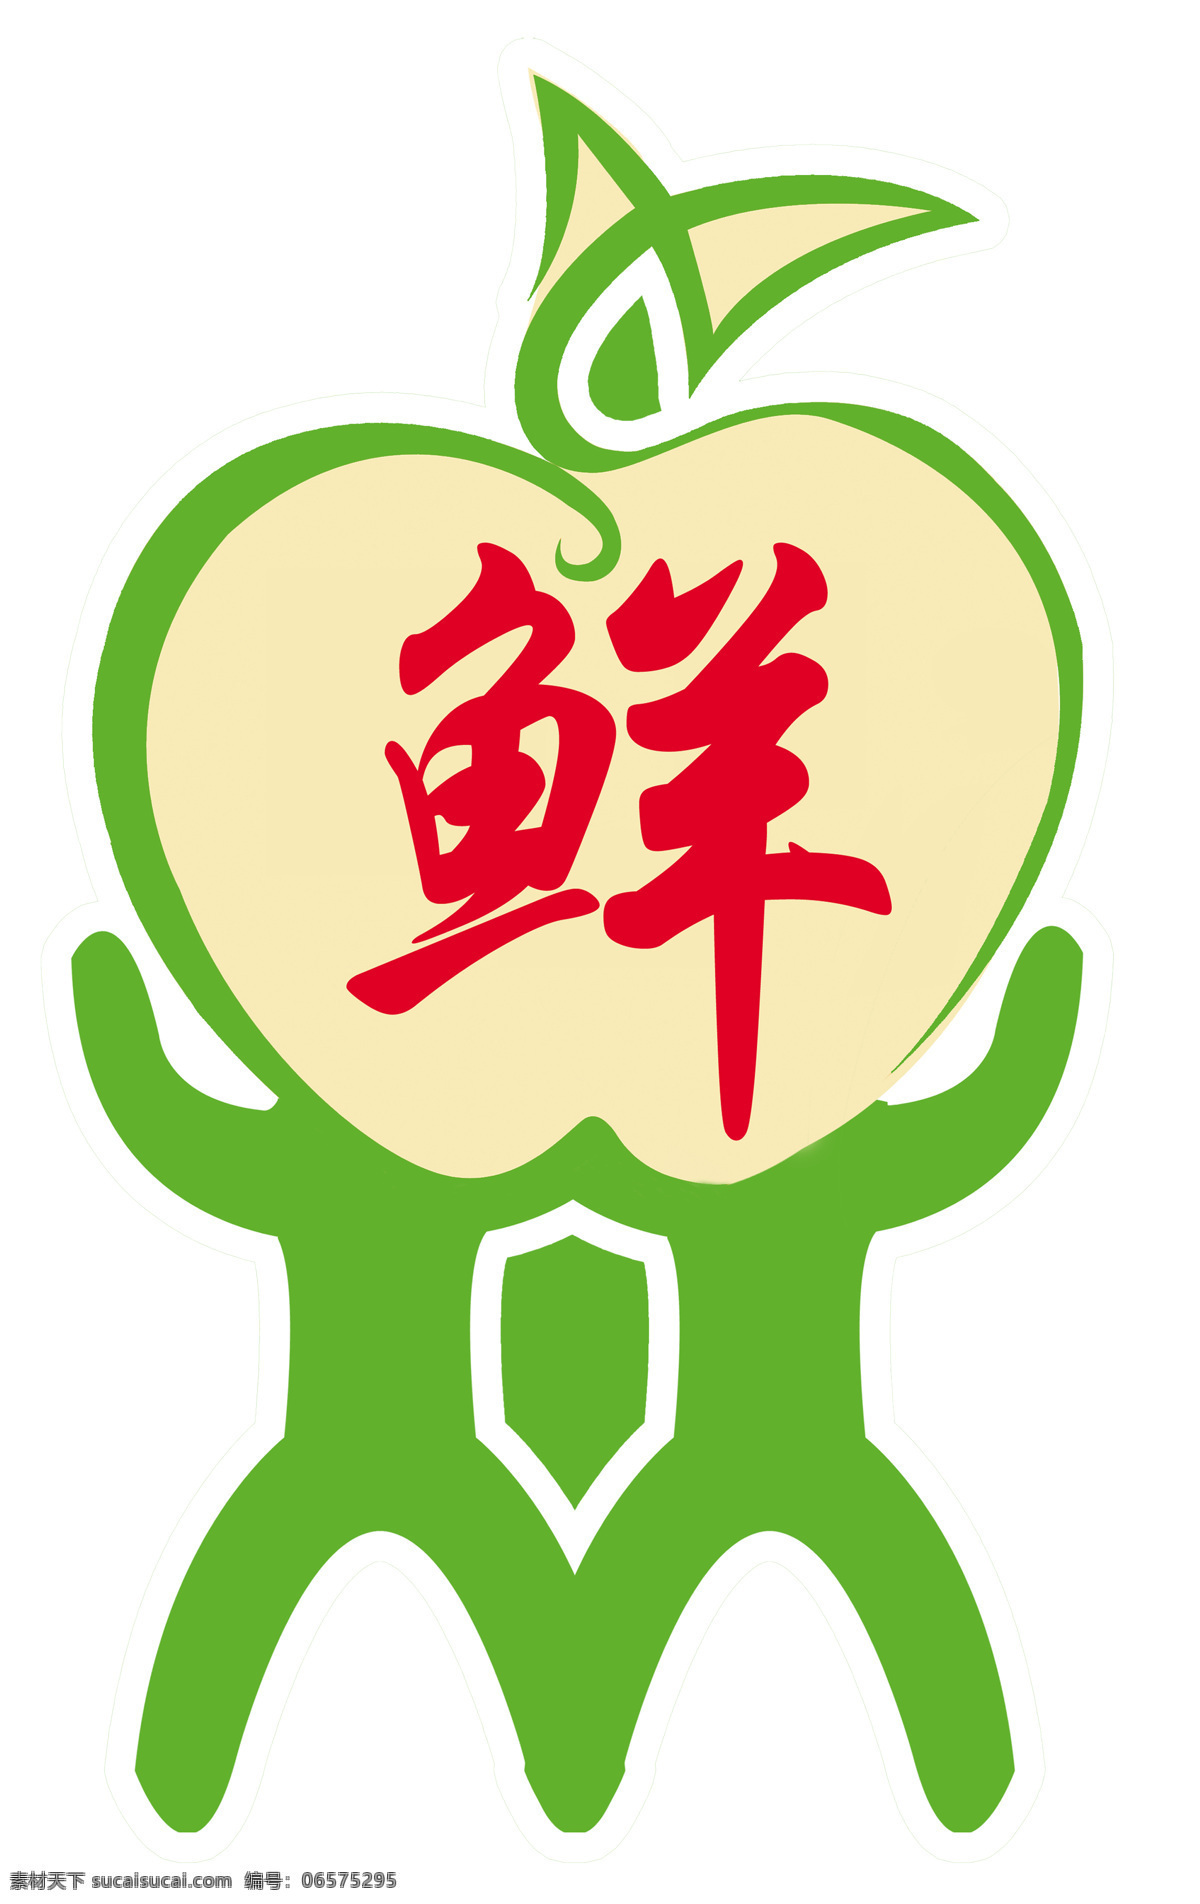 水果logo 天天鲜标志 标志 苹果 创意logo